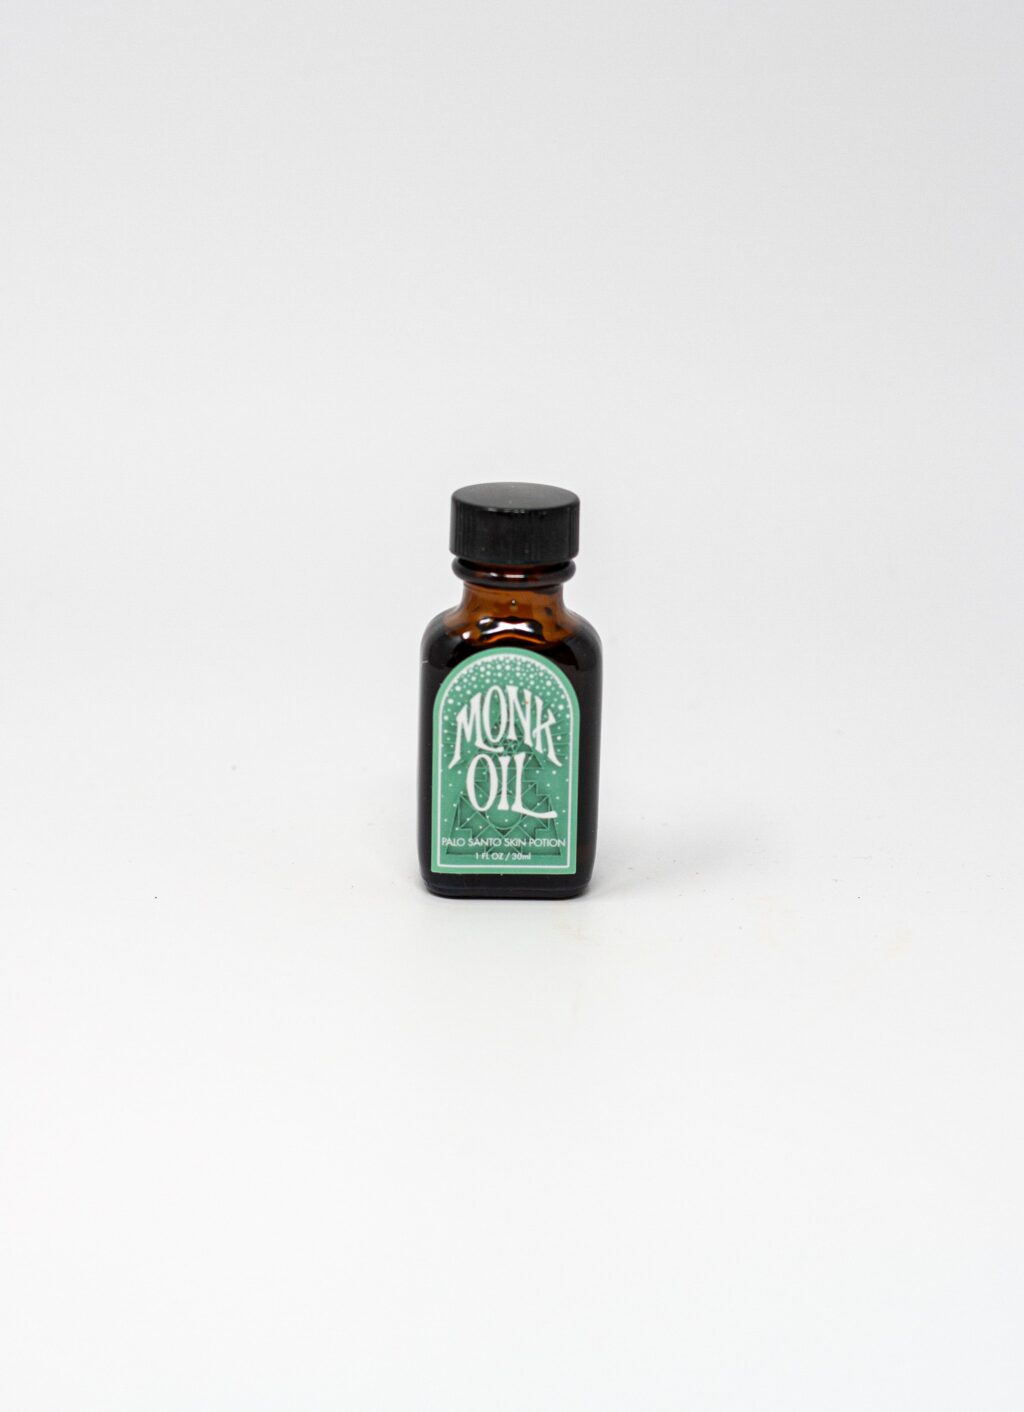 Incausa - Monk Oil - Palo Santo Skin Potion - 1oz-30ml